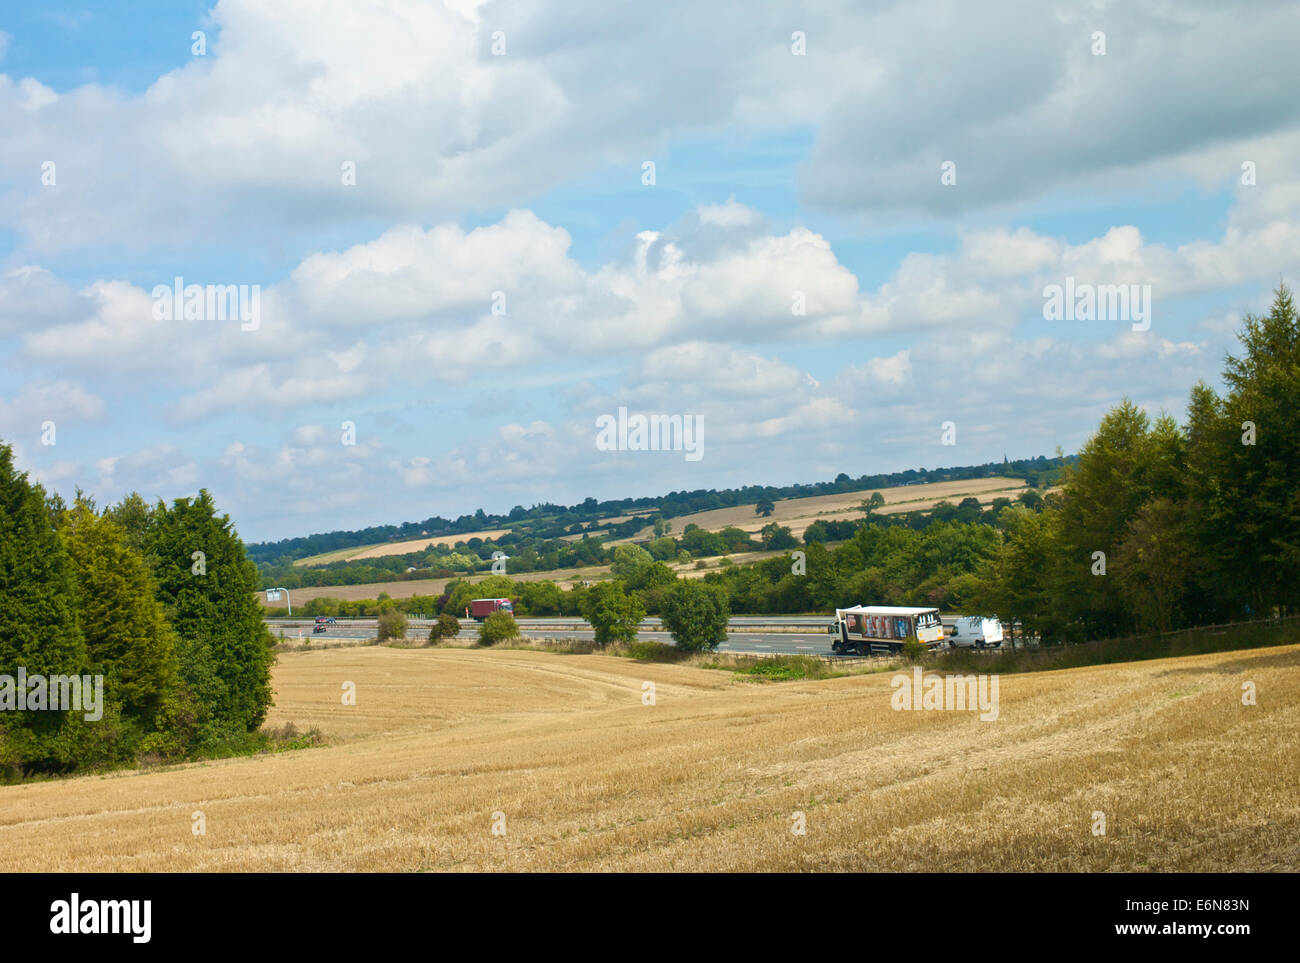 Verkehr auf M40 Autobahn vorbei an Feldern vor kurzem Schnitt Pflanzen und strahlend blauem Himmel Hintergrund. Stockfoto